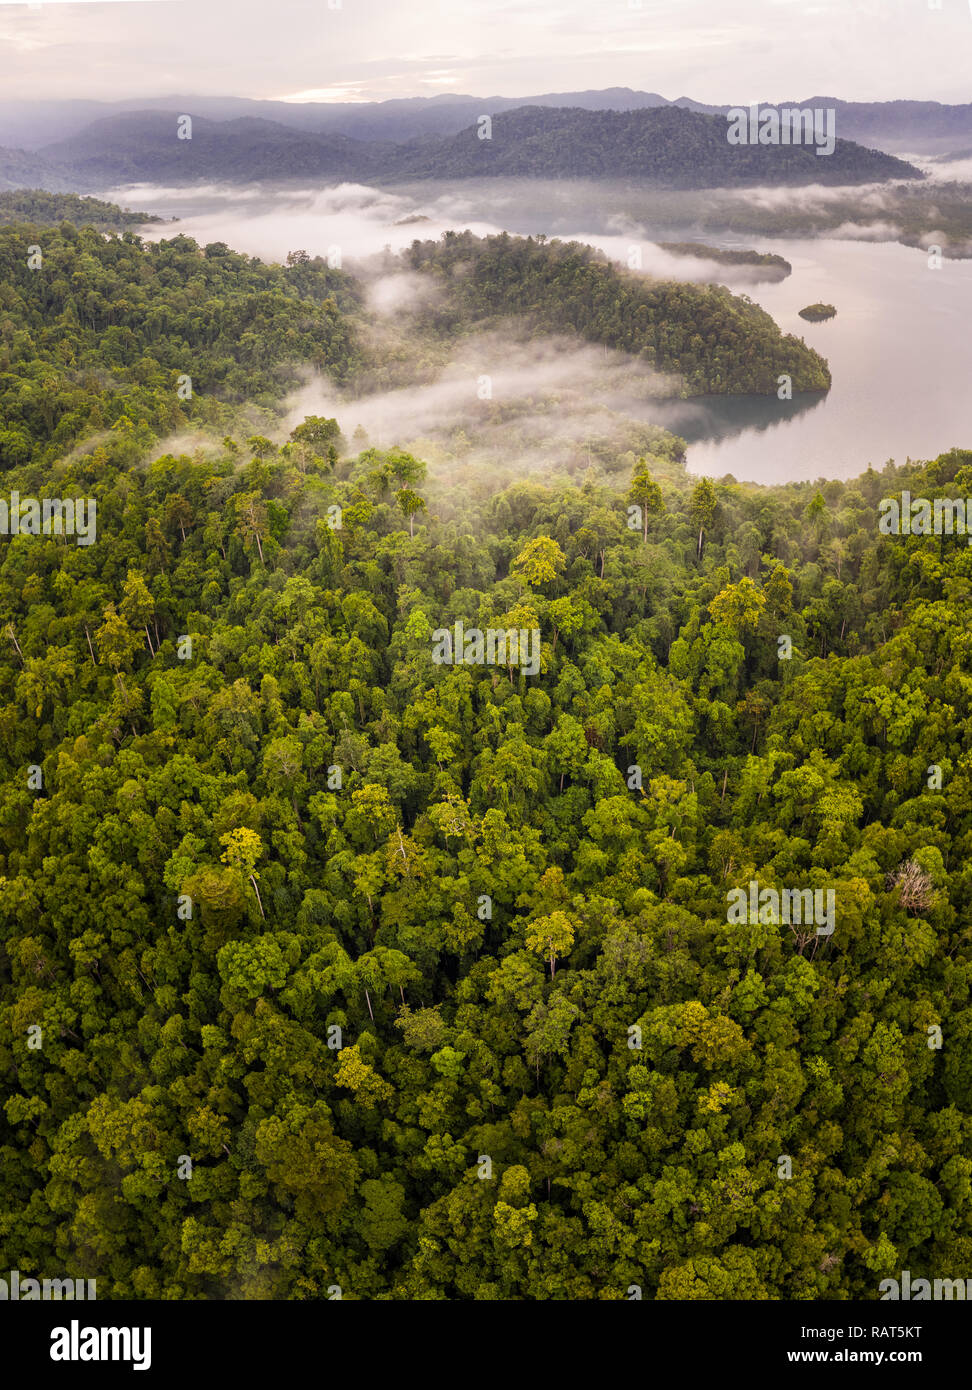 Une luxuriante forêt tropicale s'étend sur une île tropicale à distance à Raja Ampat, en Indonésie. Cette région diversifiée est connu comme le cœur du Triangle de Corail. Banque D'Images